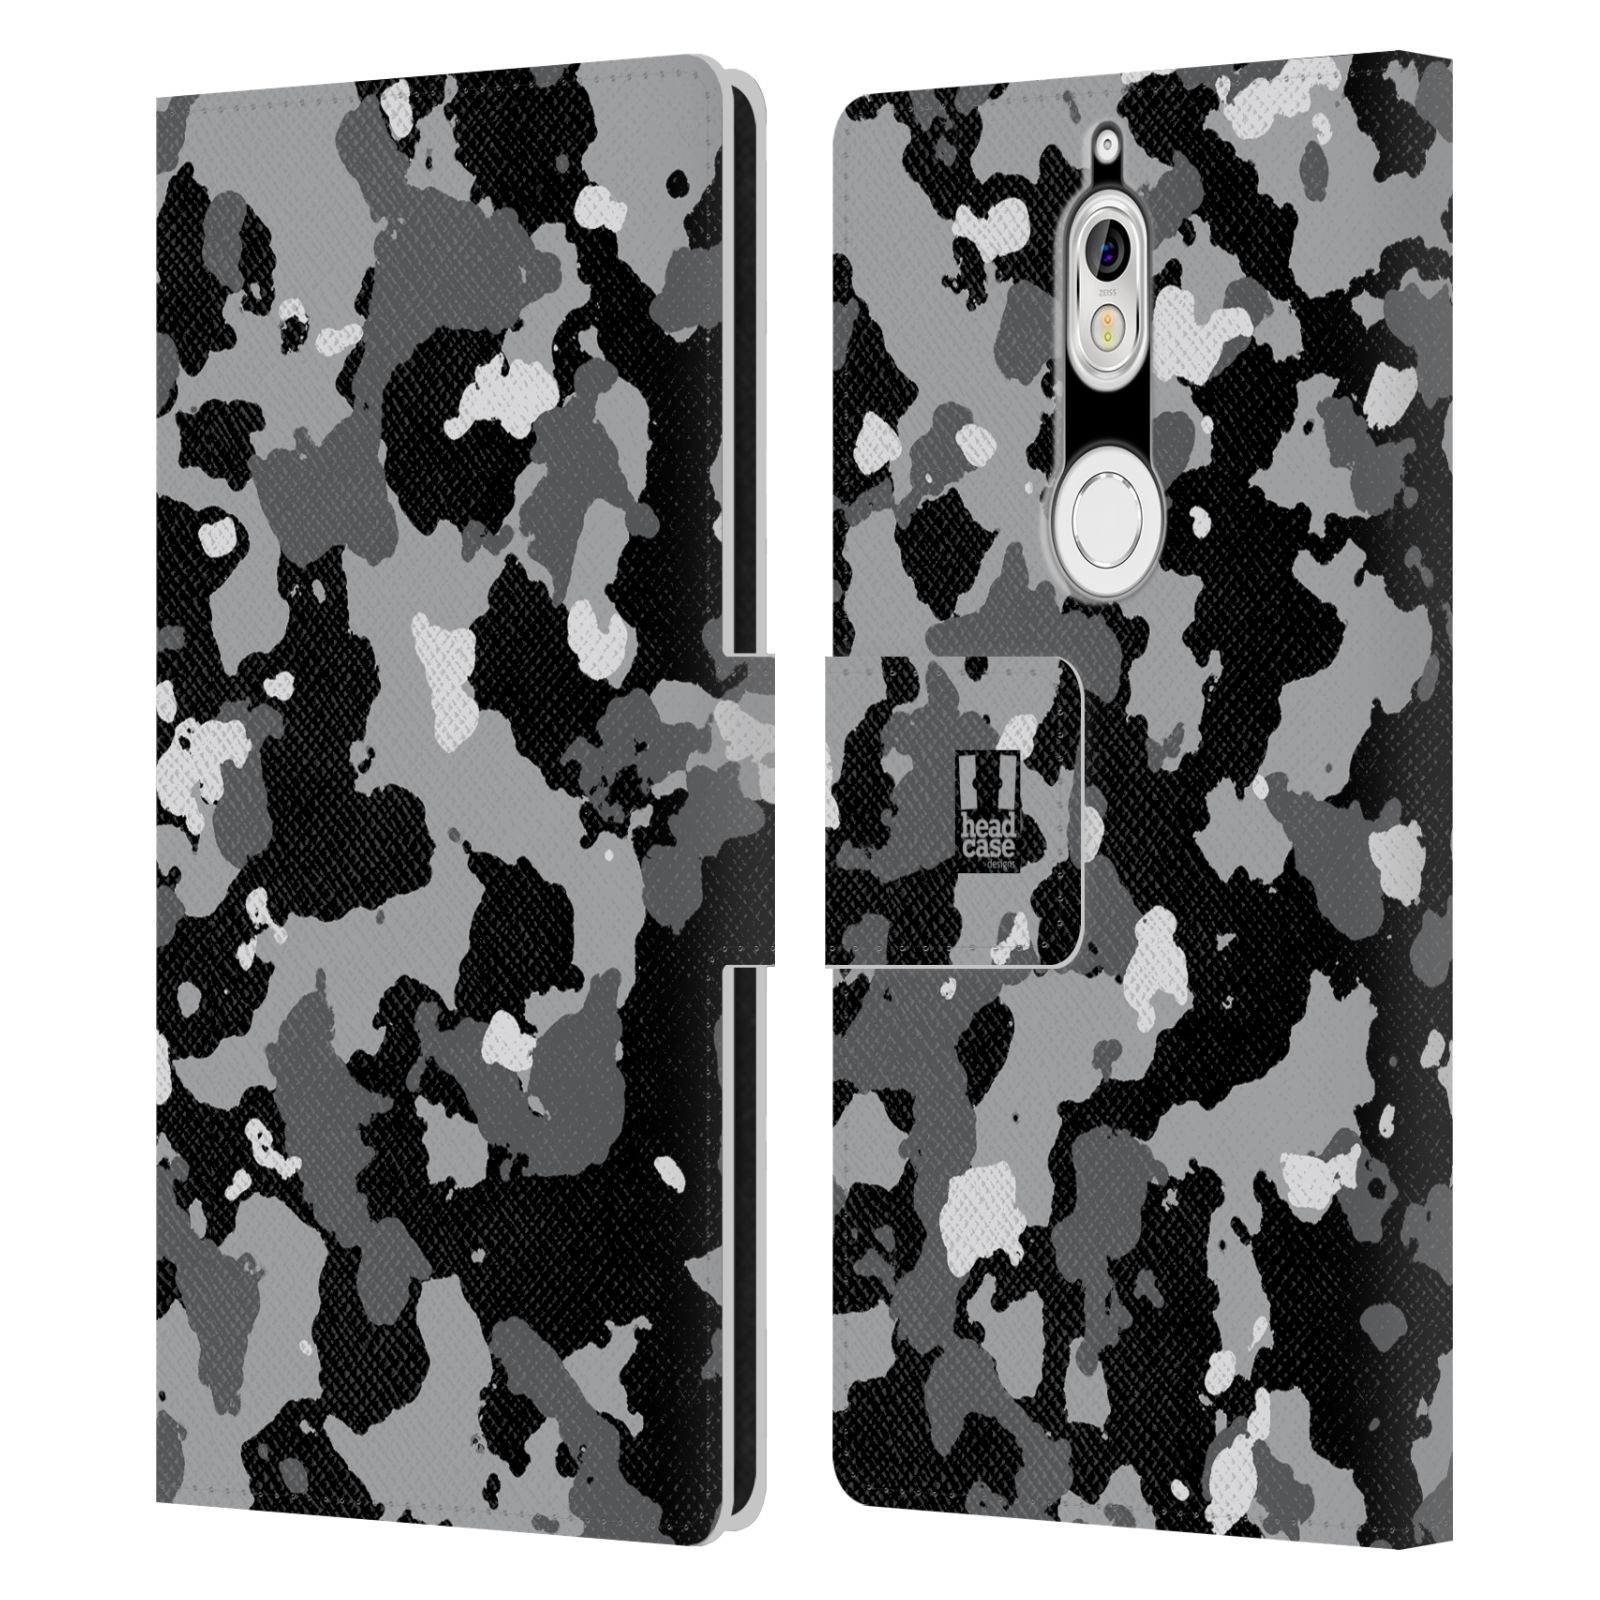 Pouzdro na mobil Nokia 7 - Head Case - kamuflaž černá a šedá